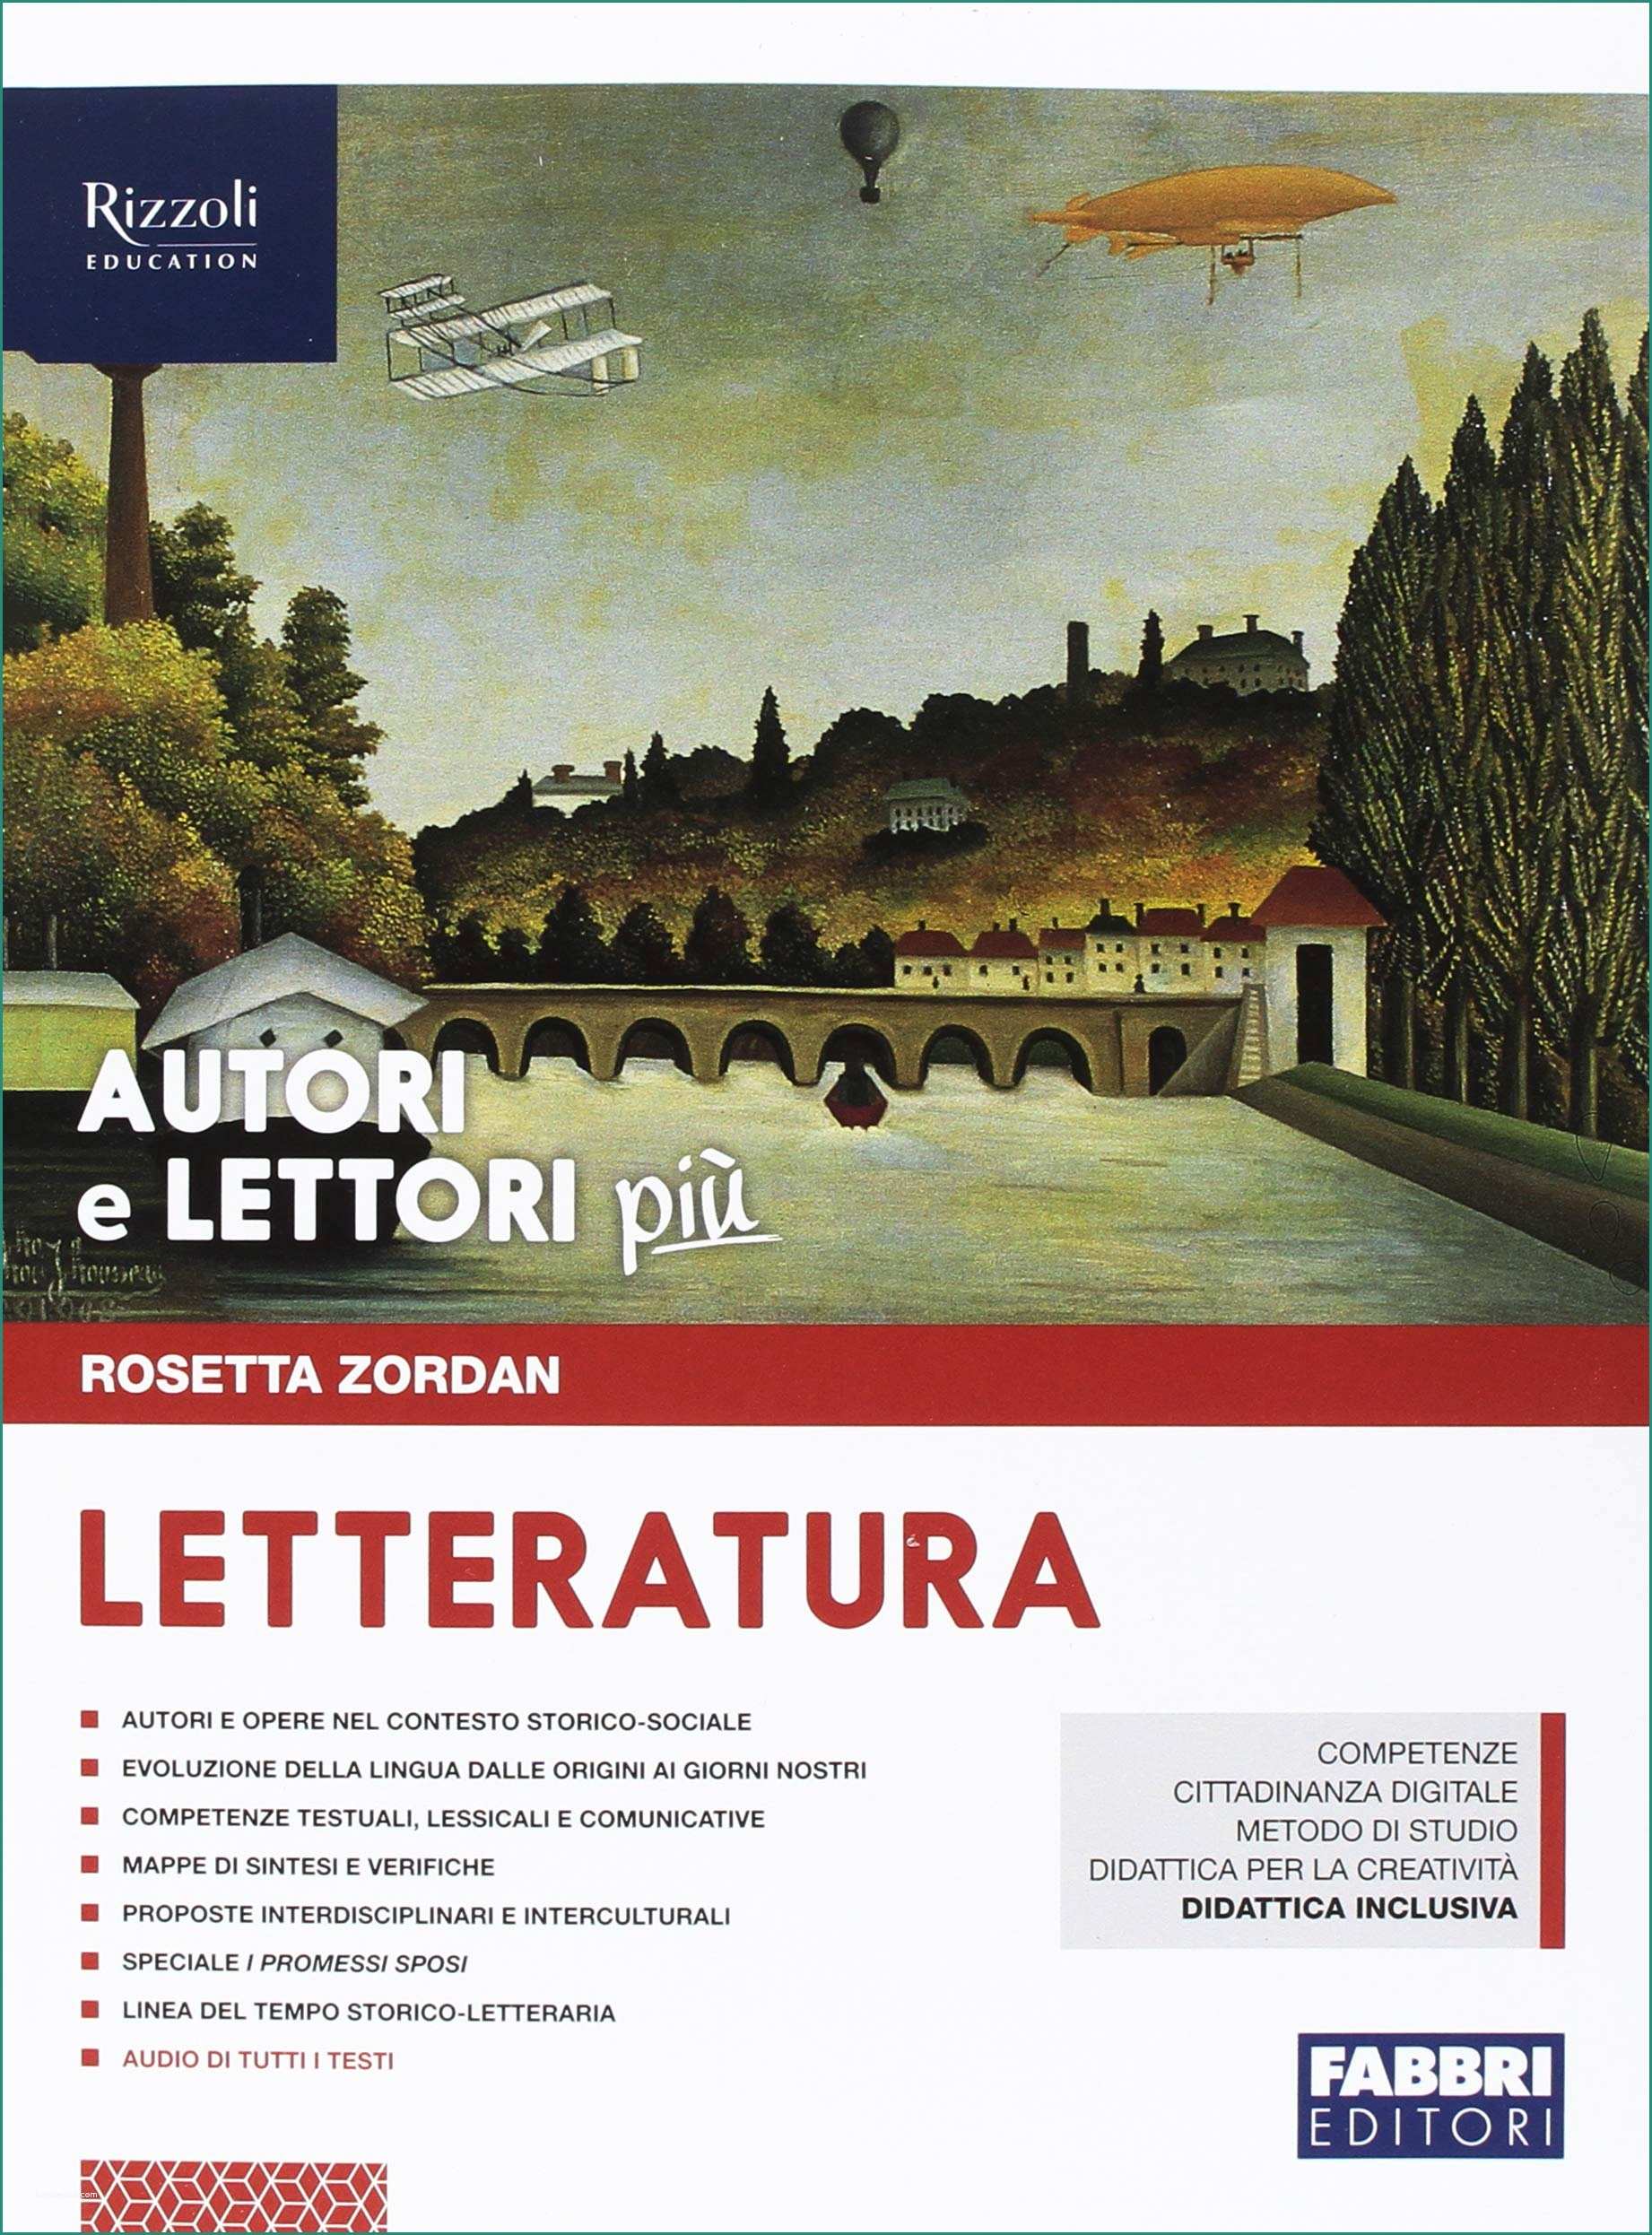 Copertine Per Quaderni Di Italiano E Autori E Lettori Pi¹ Con Quaderno E Letteratura Per La Scuola